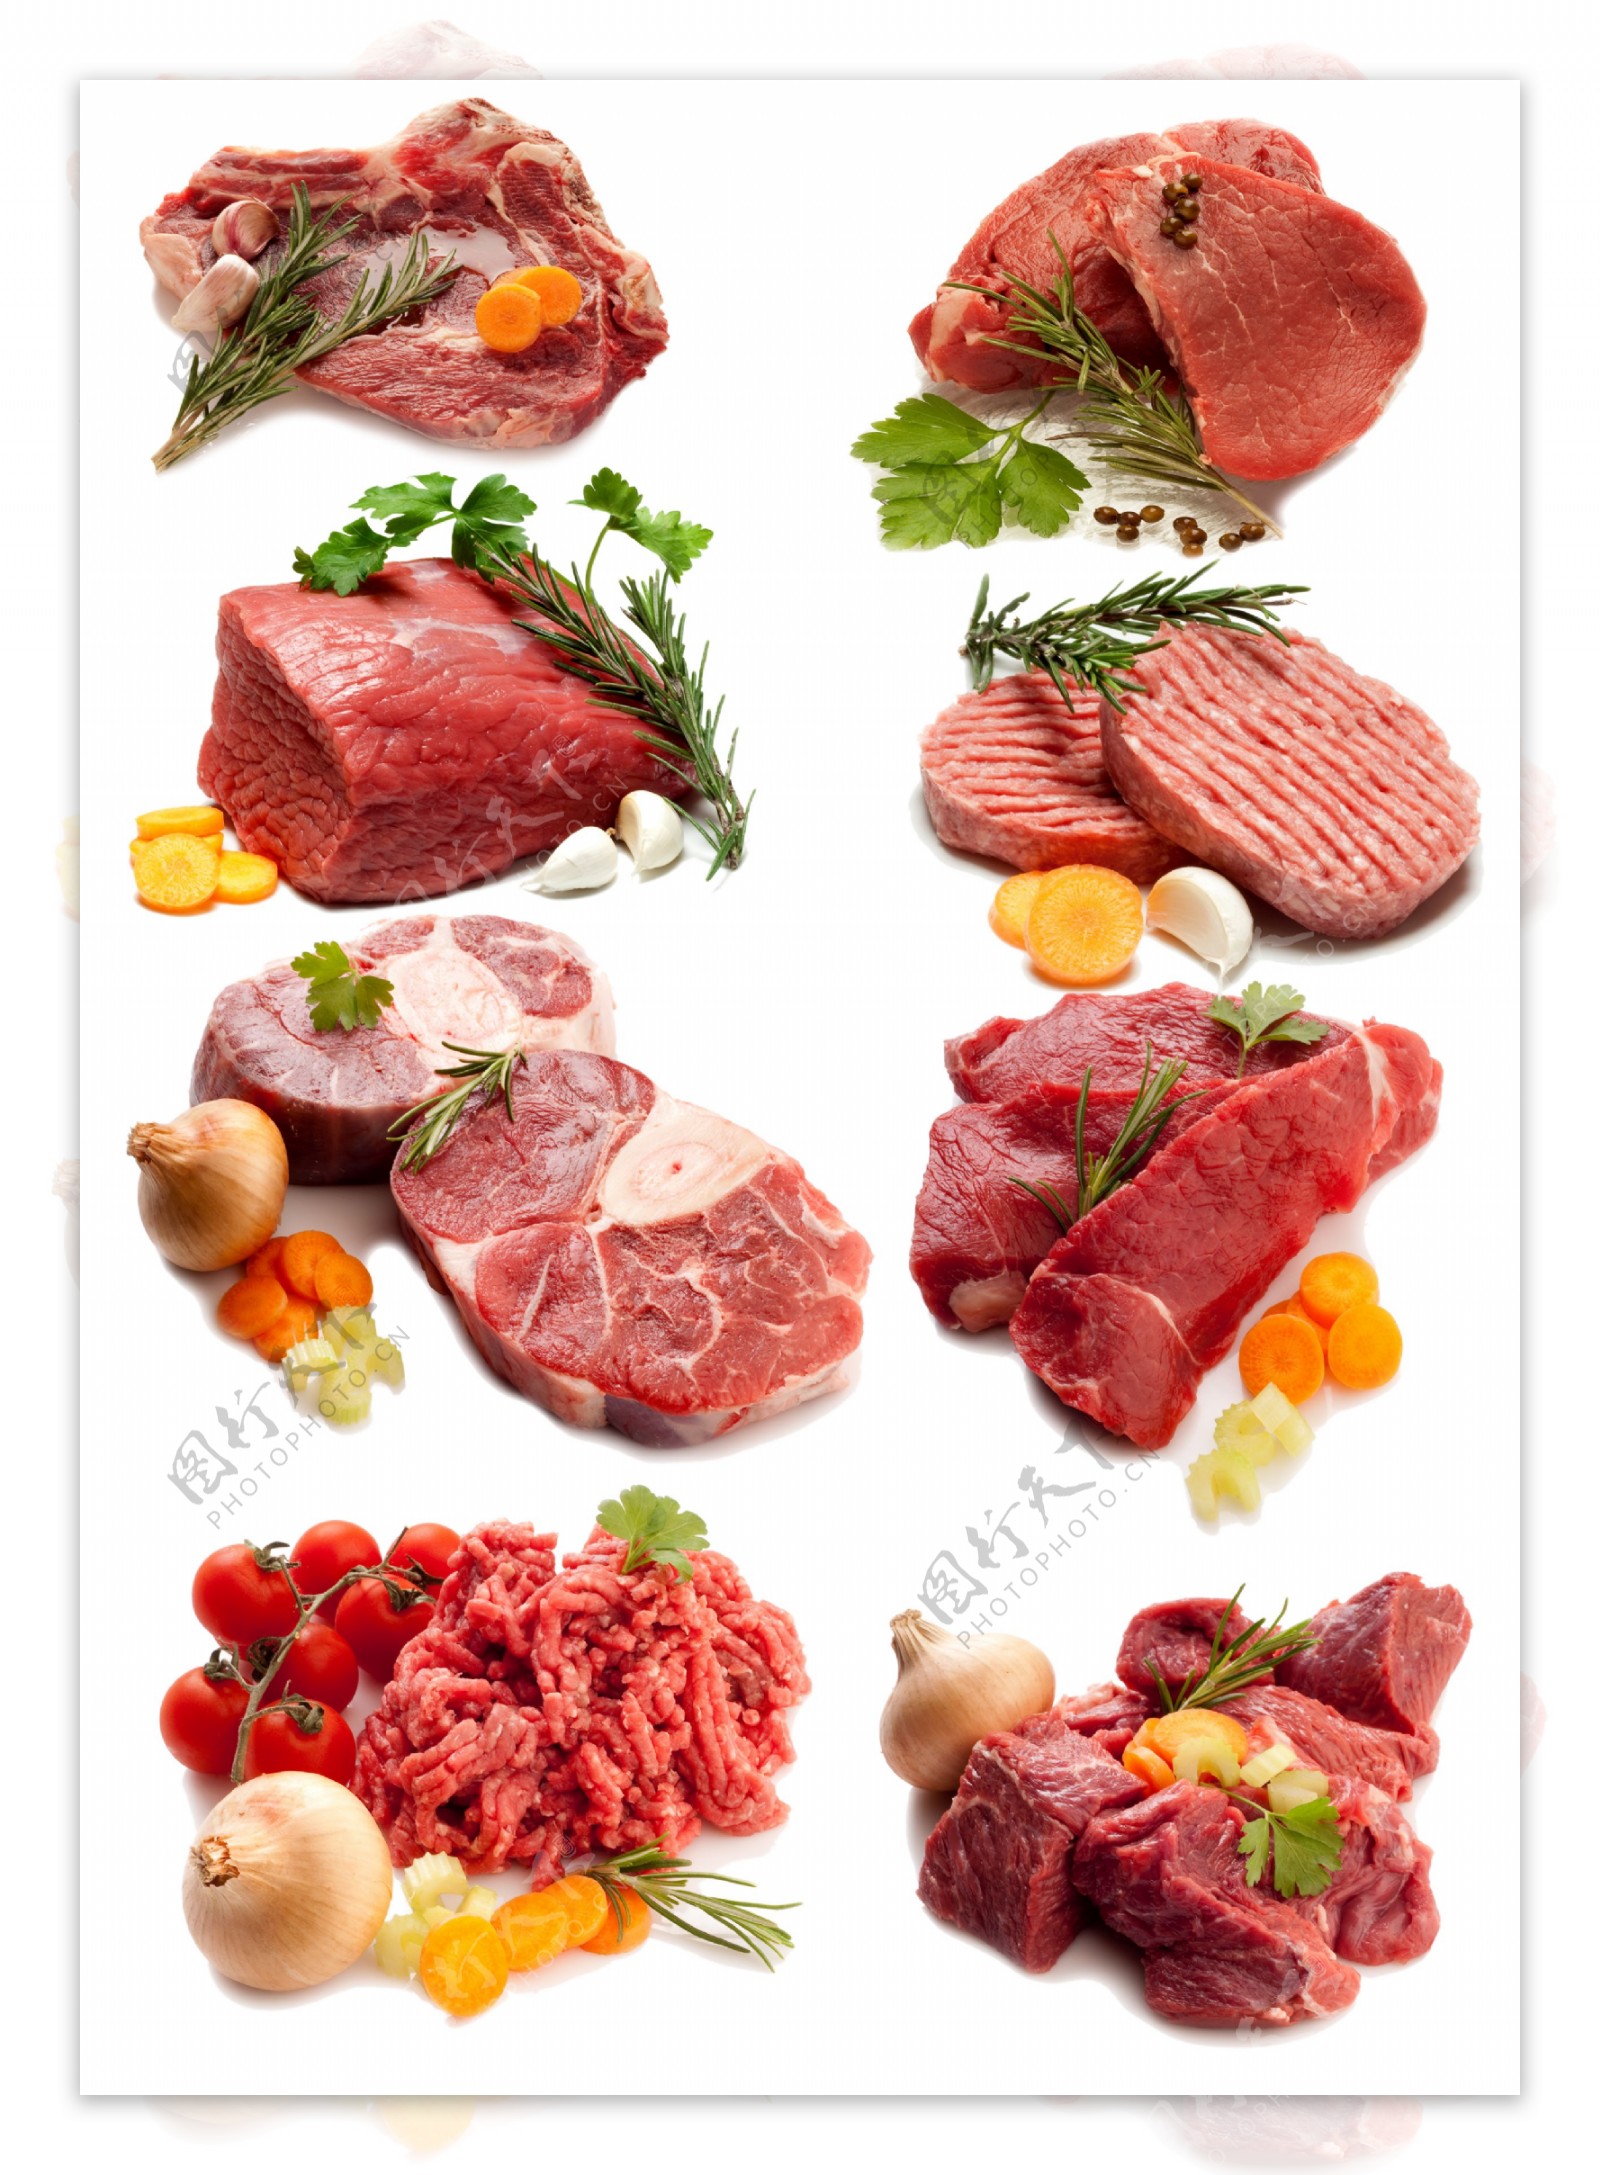 各种形式的肉类图片